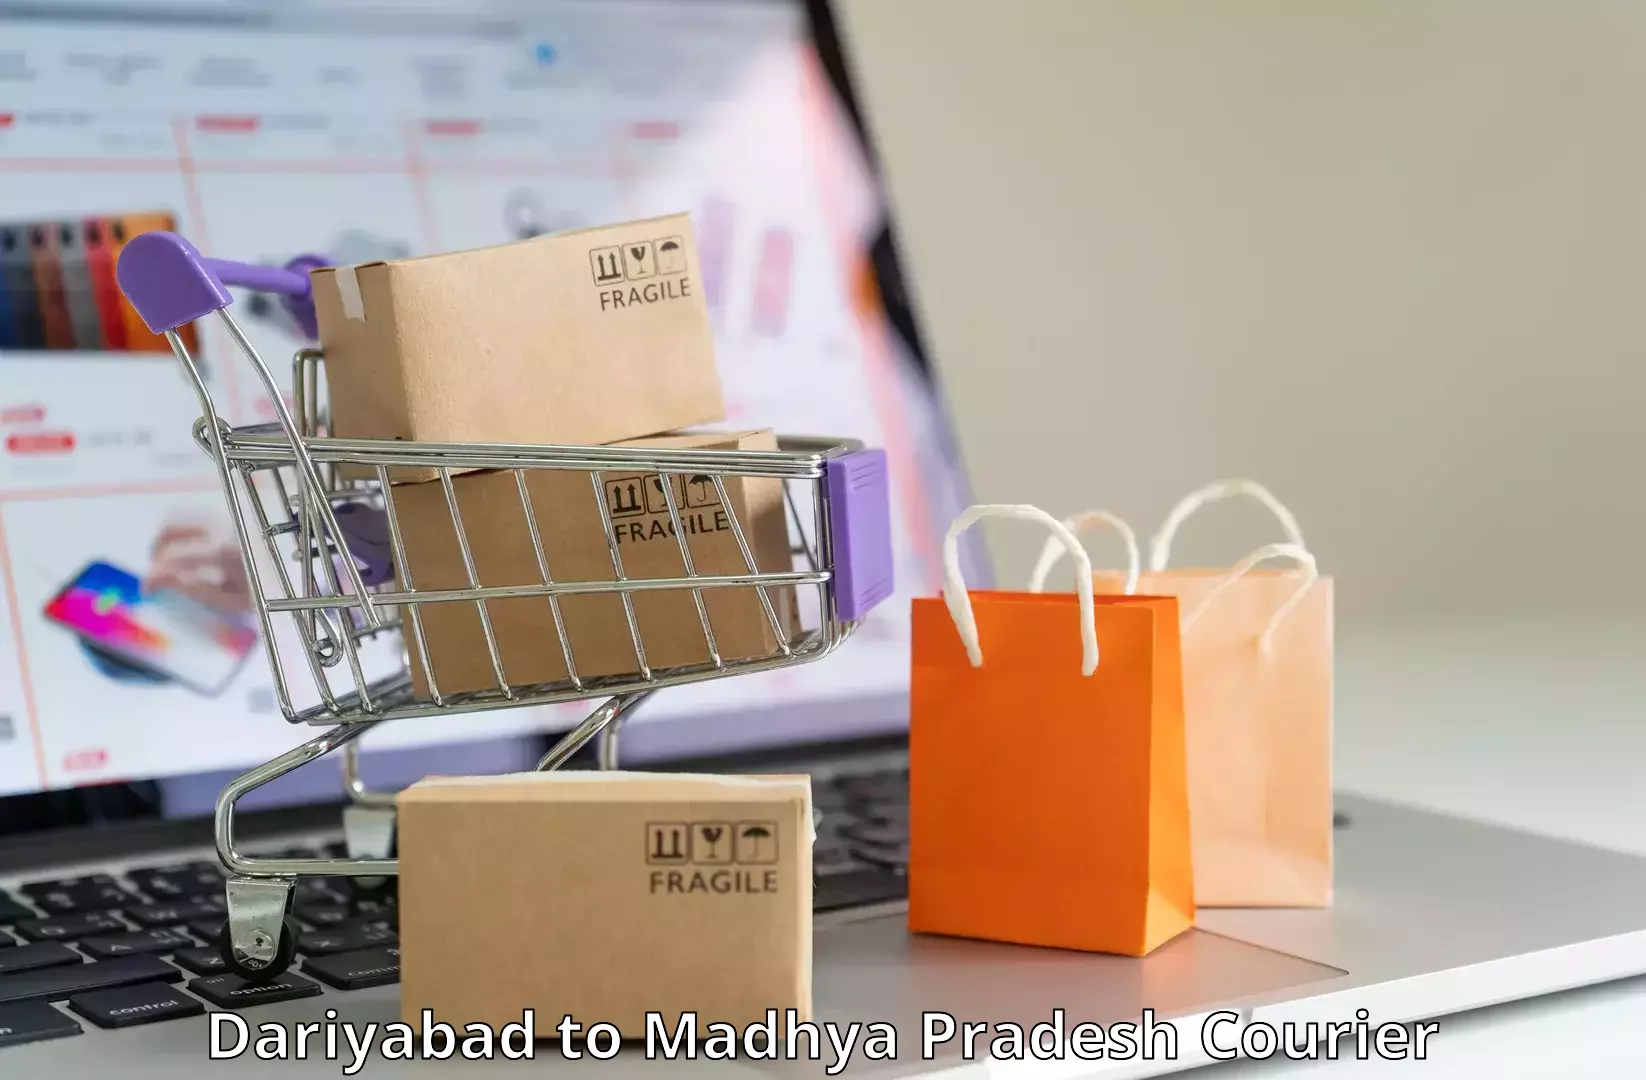 High-capacity parcel service Dariyabad to Khirkiya